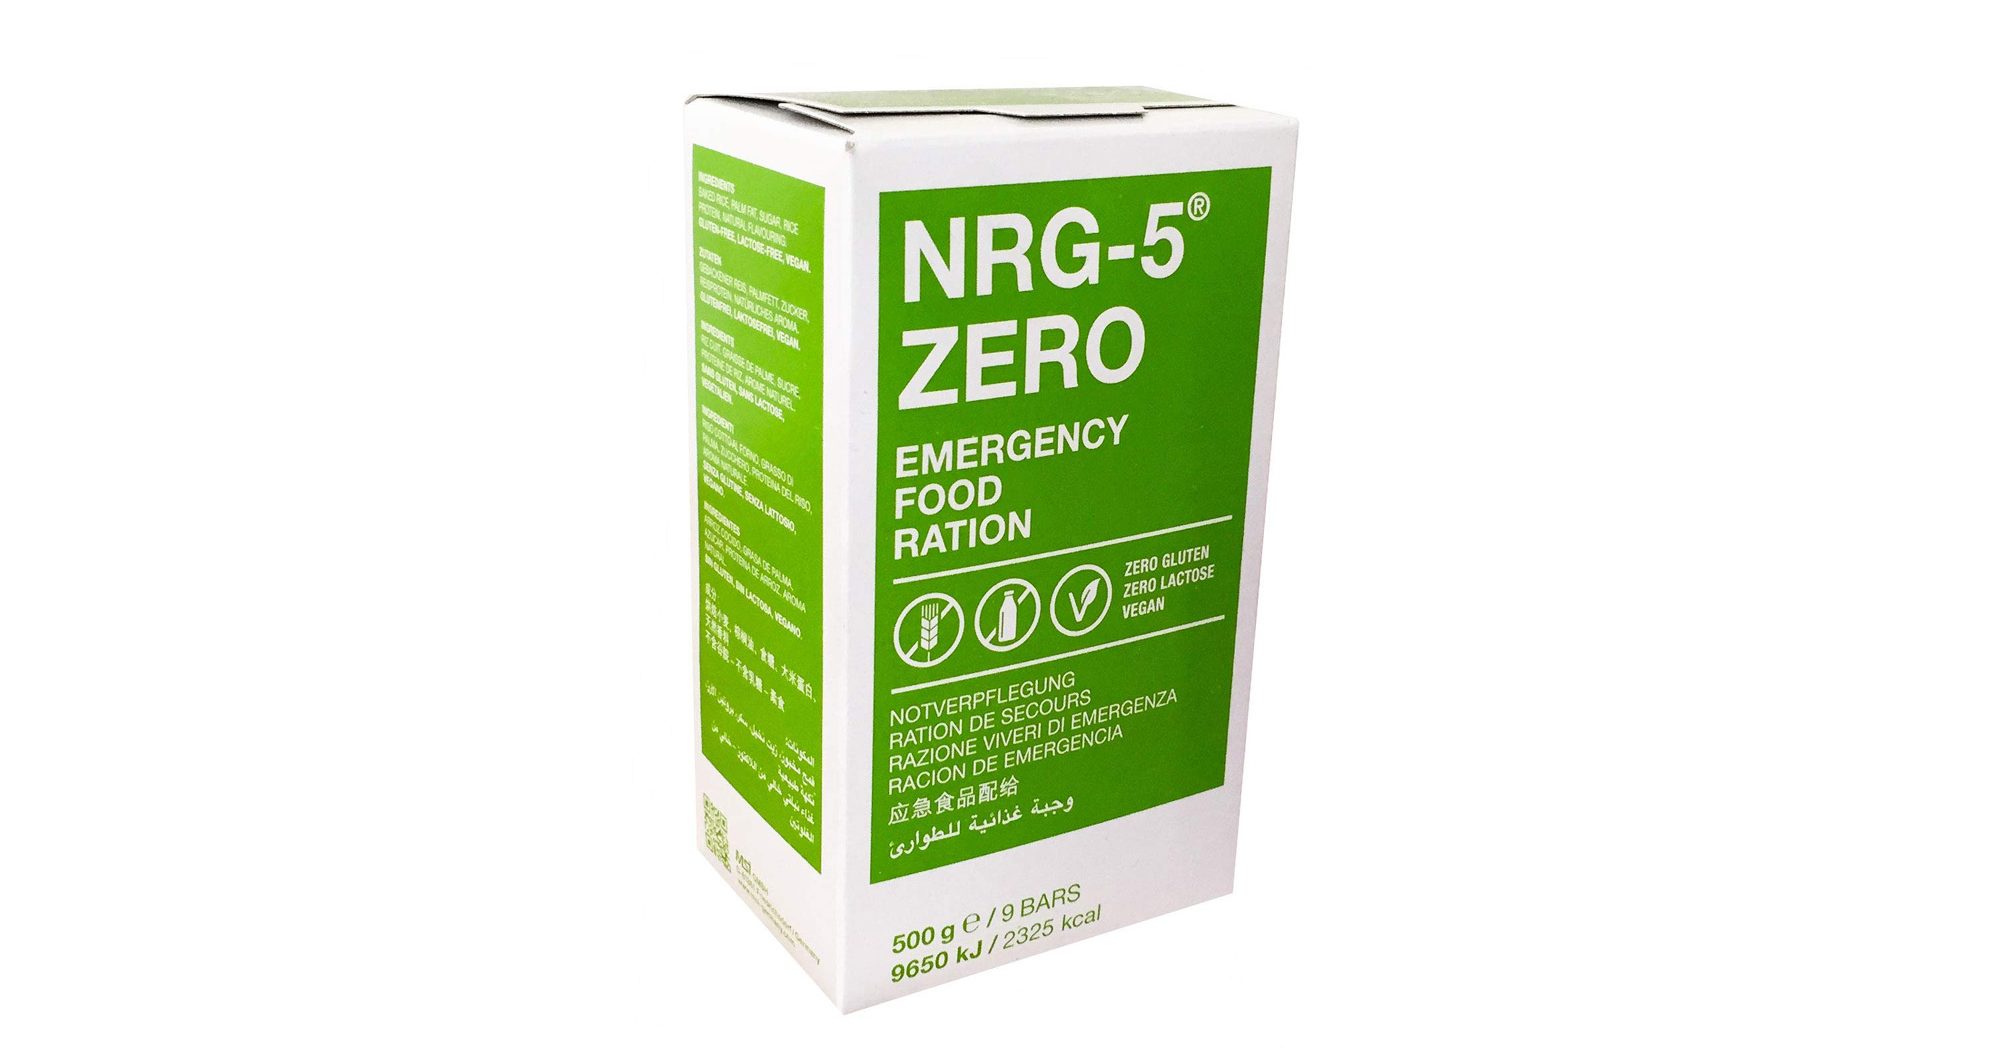 NRG-5 Notration Notverpflegung